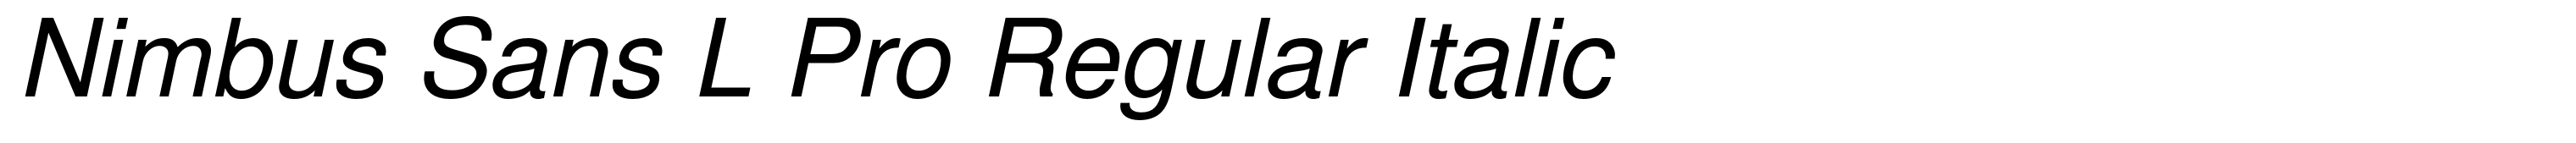 Nimbus Sans L Pro Regular Italic